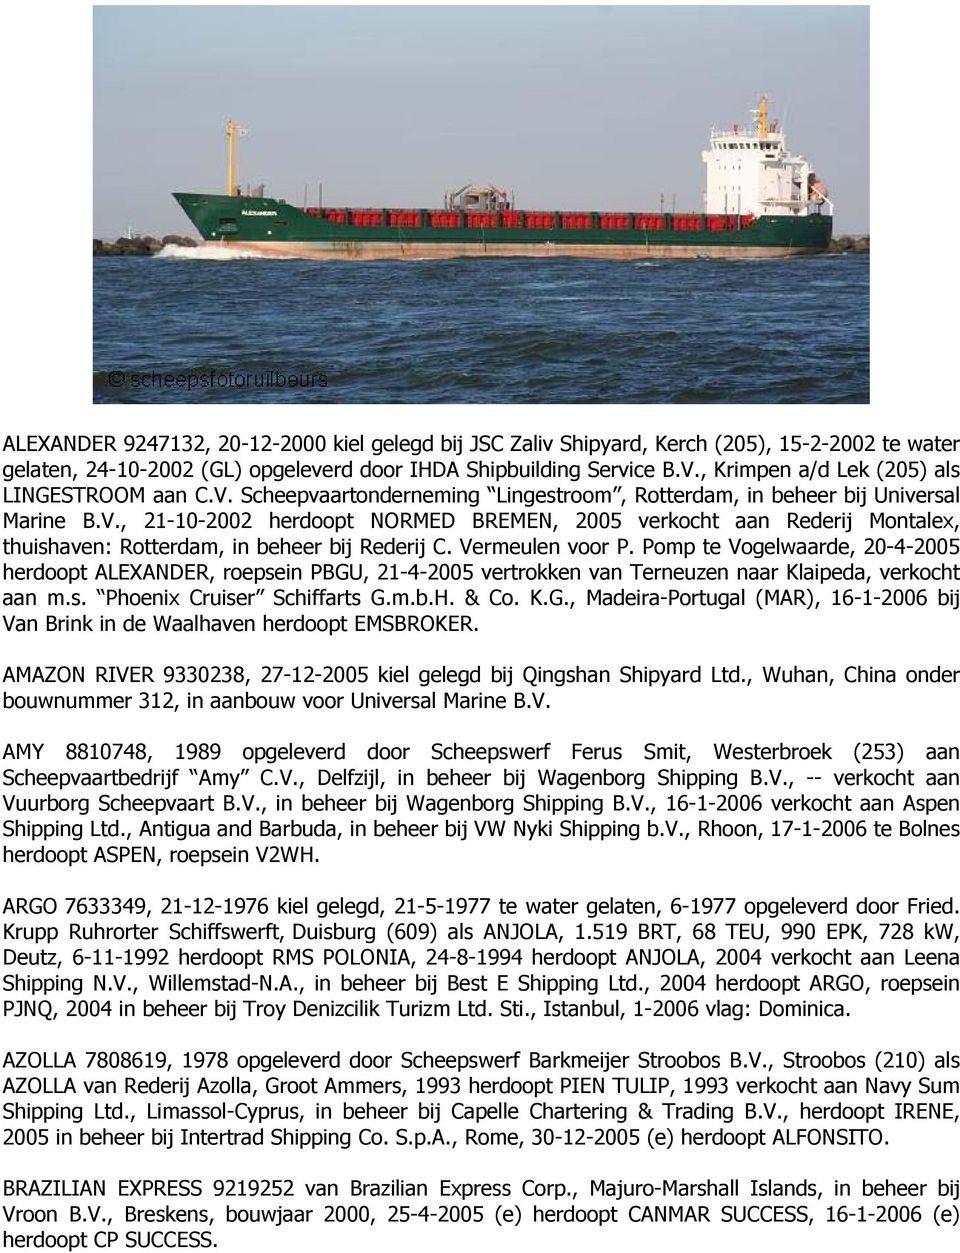 Vermeulen voor P. Pomp te Vogelwaarde, 20-4-2005 herdoopt ALEXANDER, roepsein PBGU, 21-4-2005 vertrokken van Terneuzen naar Klaipeda, verkocht aan m.s. Phoenix Cruiser Schiffarts G.m.b.H. & Co. K.G., Madeira-Portugal (MAR), 16-1-2006 bij Van Brink in de Waalhaven herdoopt EMSBROKER.